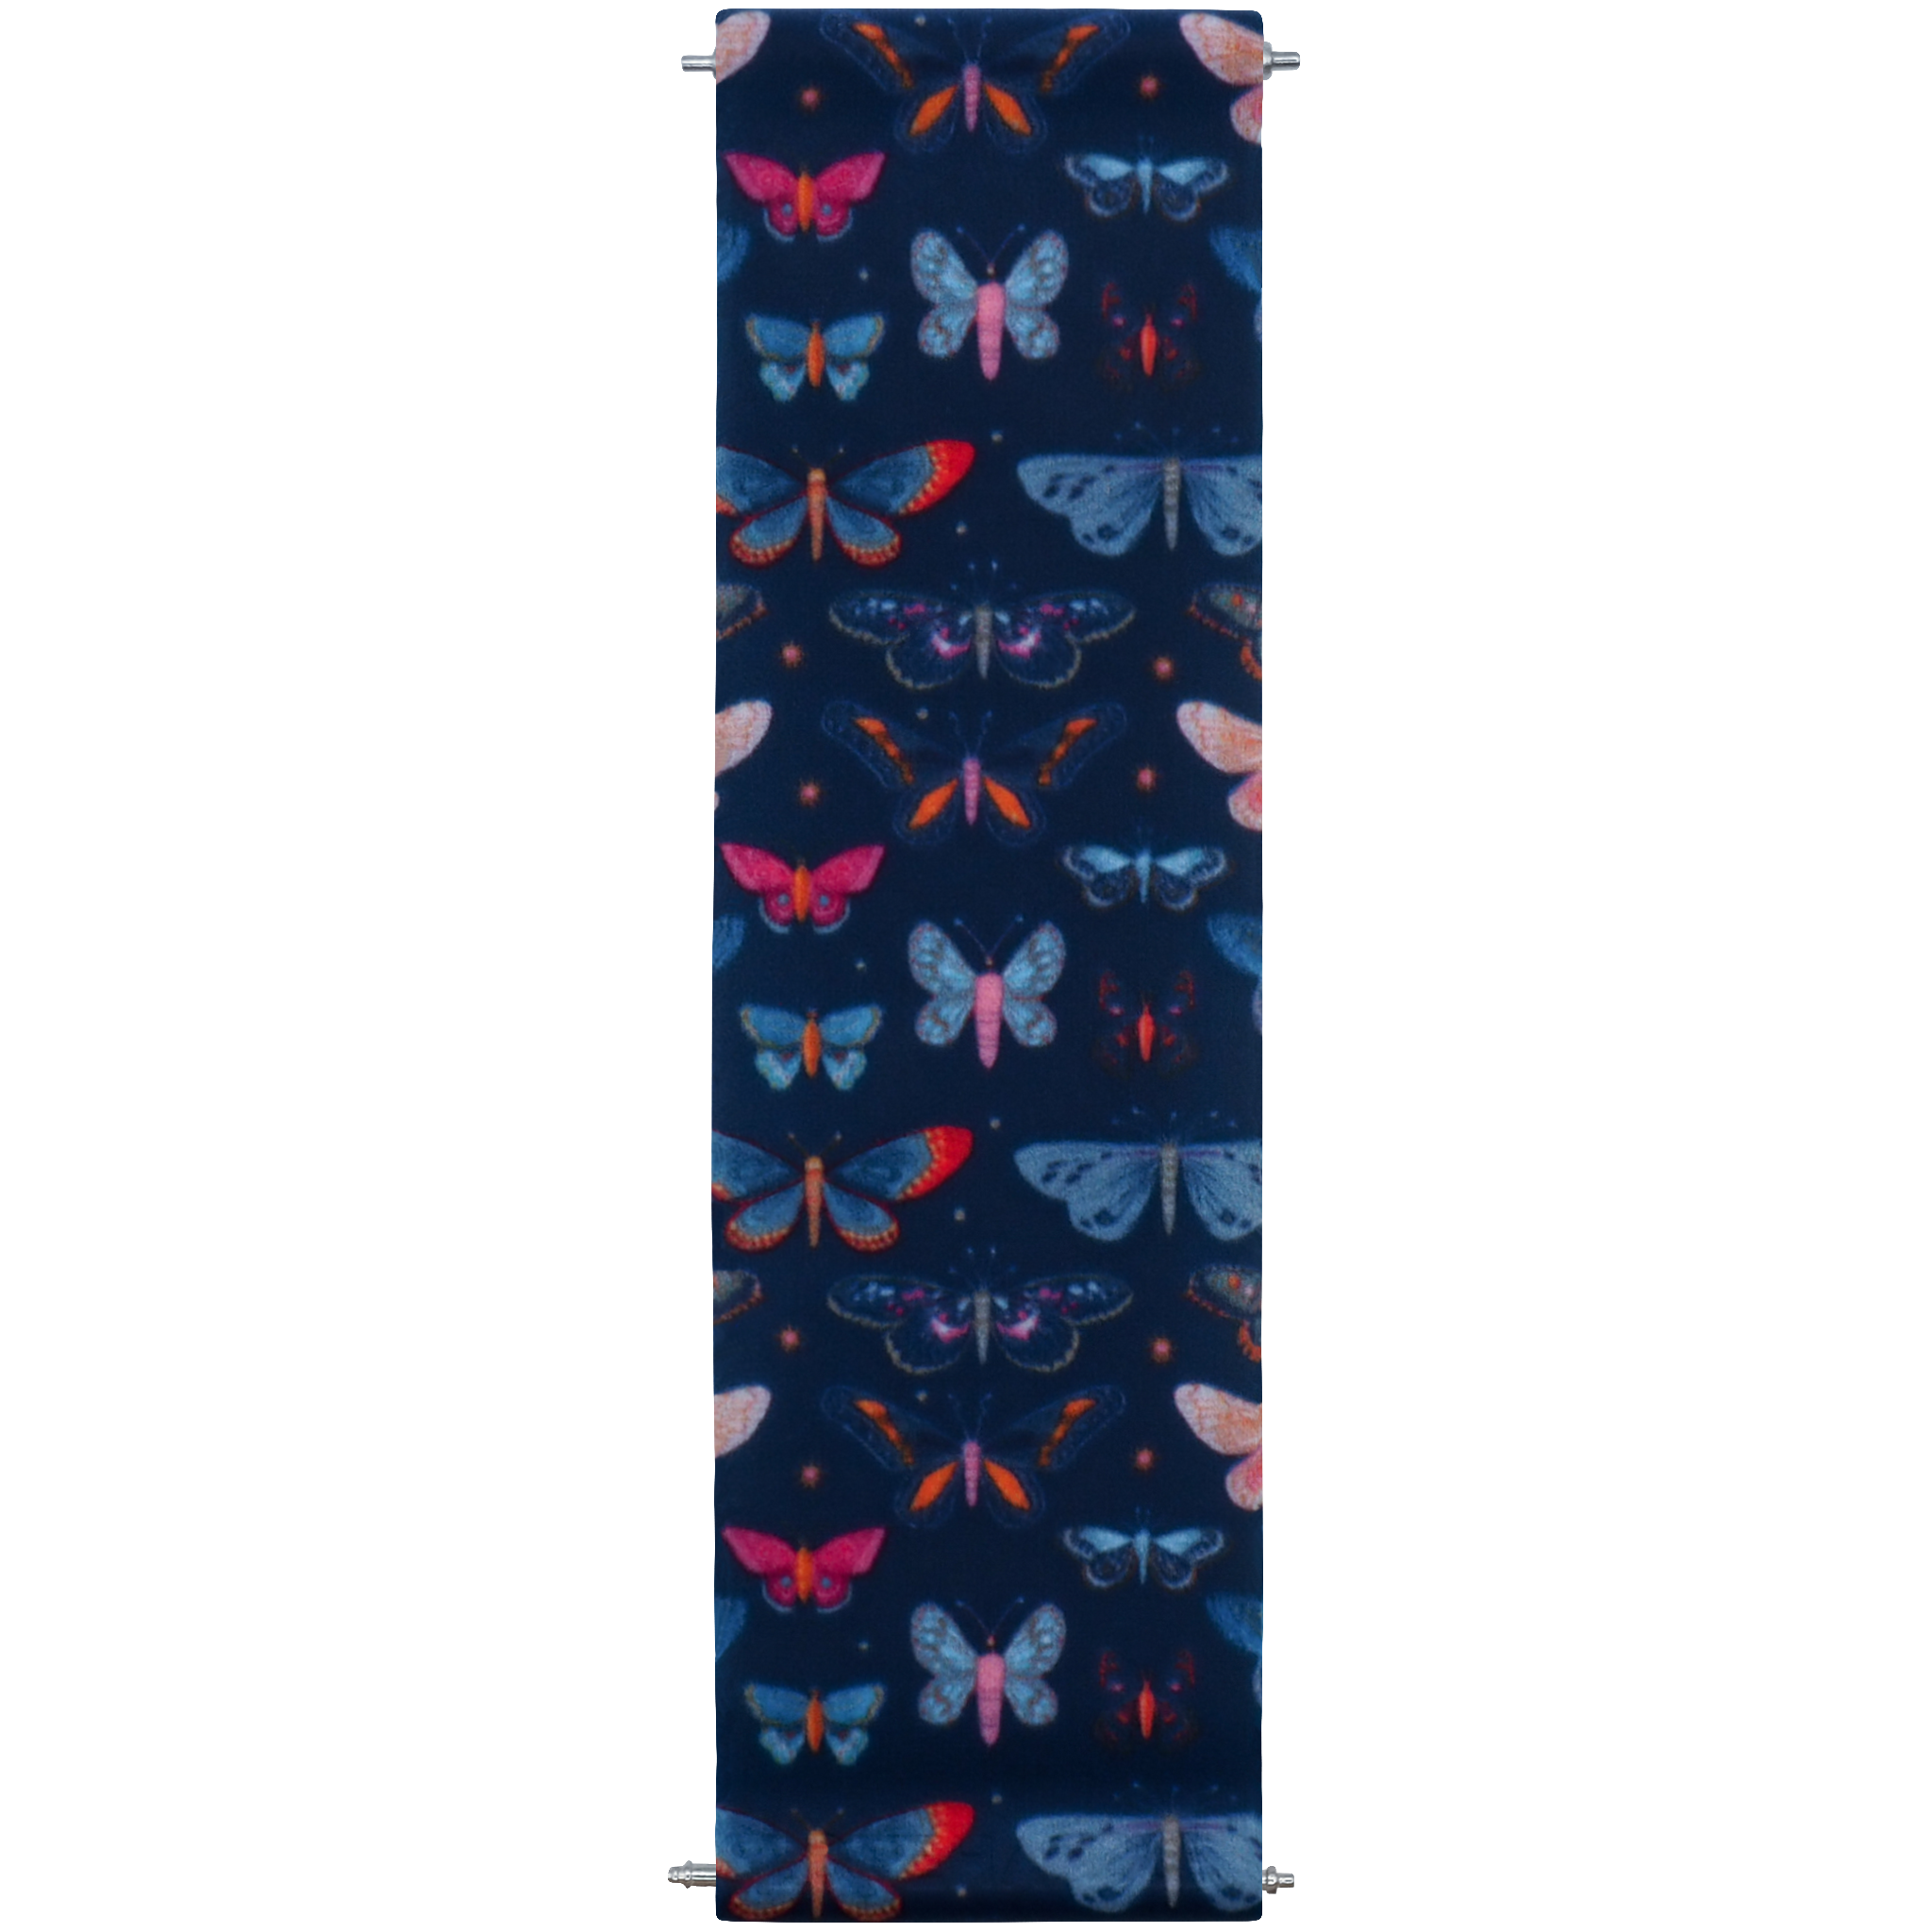 louis vuitton butterfly wallpaper